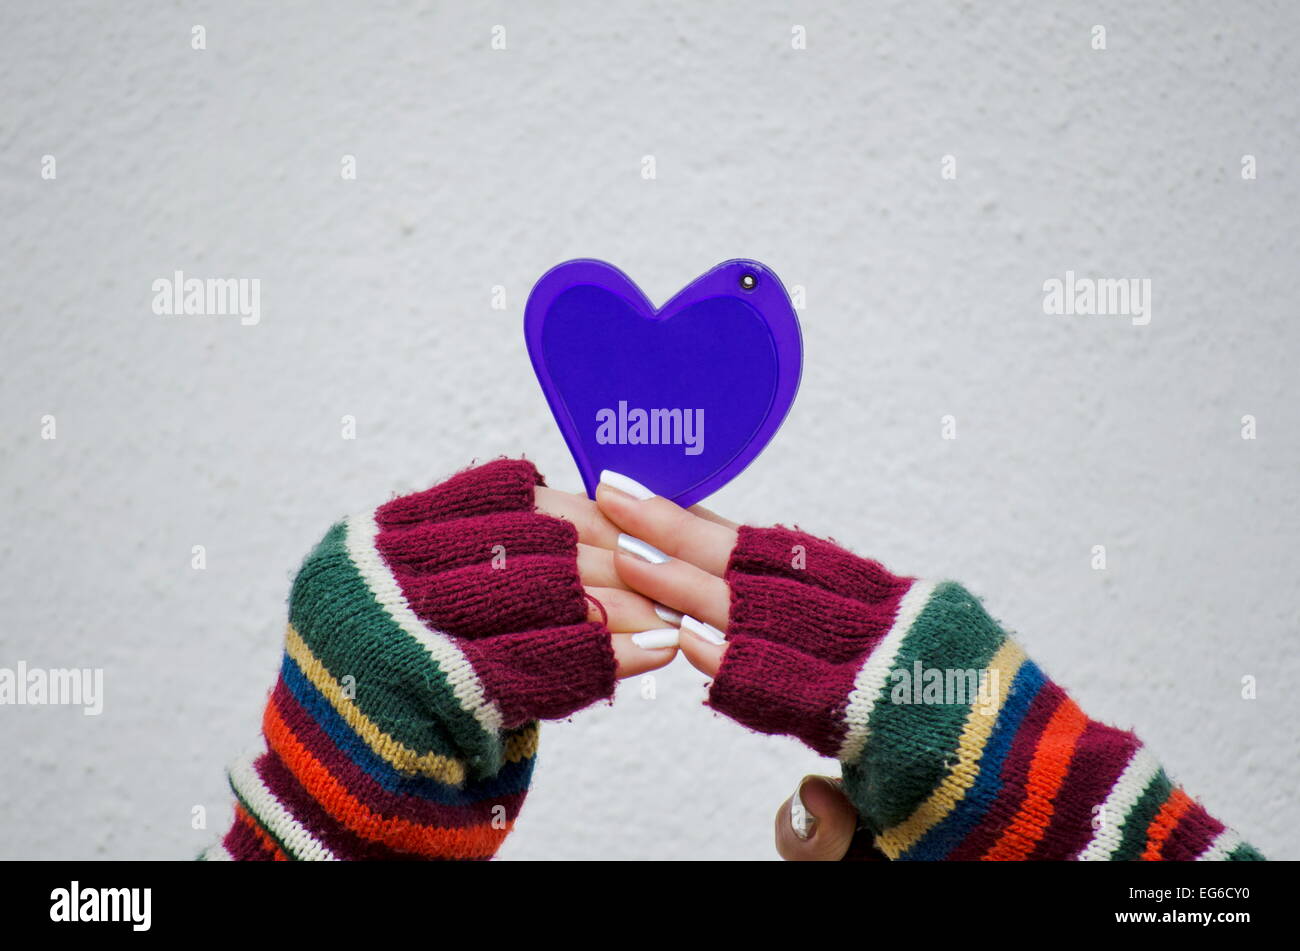 Fille de mitaines colorées tenant un cœur violet contre un mur blanc Banque D'Images